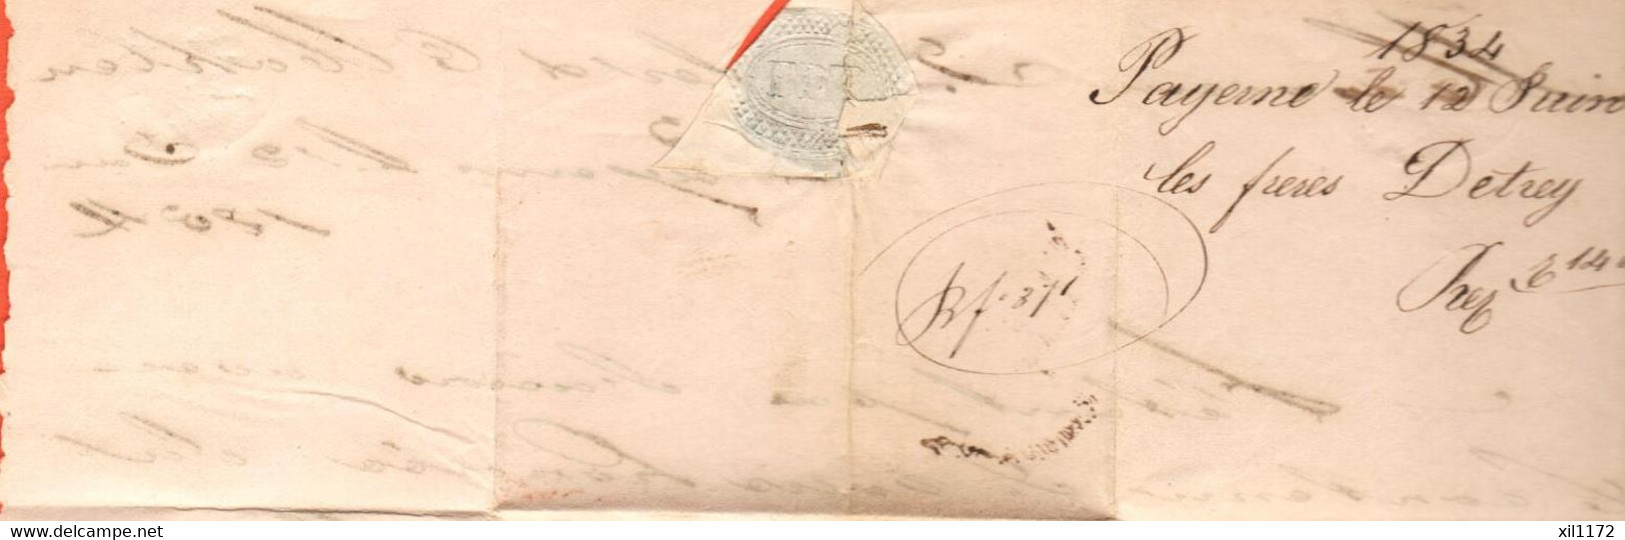 PPH2-04 RARE Lettre Envoyée De Payerne 12 Juin 1834 à Gessler Wohlen Aargau. Argovie - ...-1845 Precursores